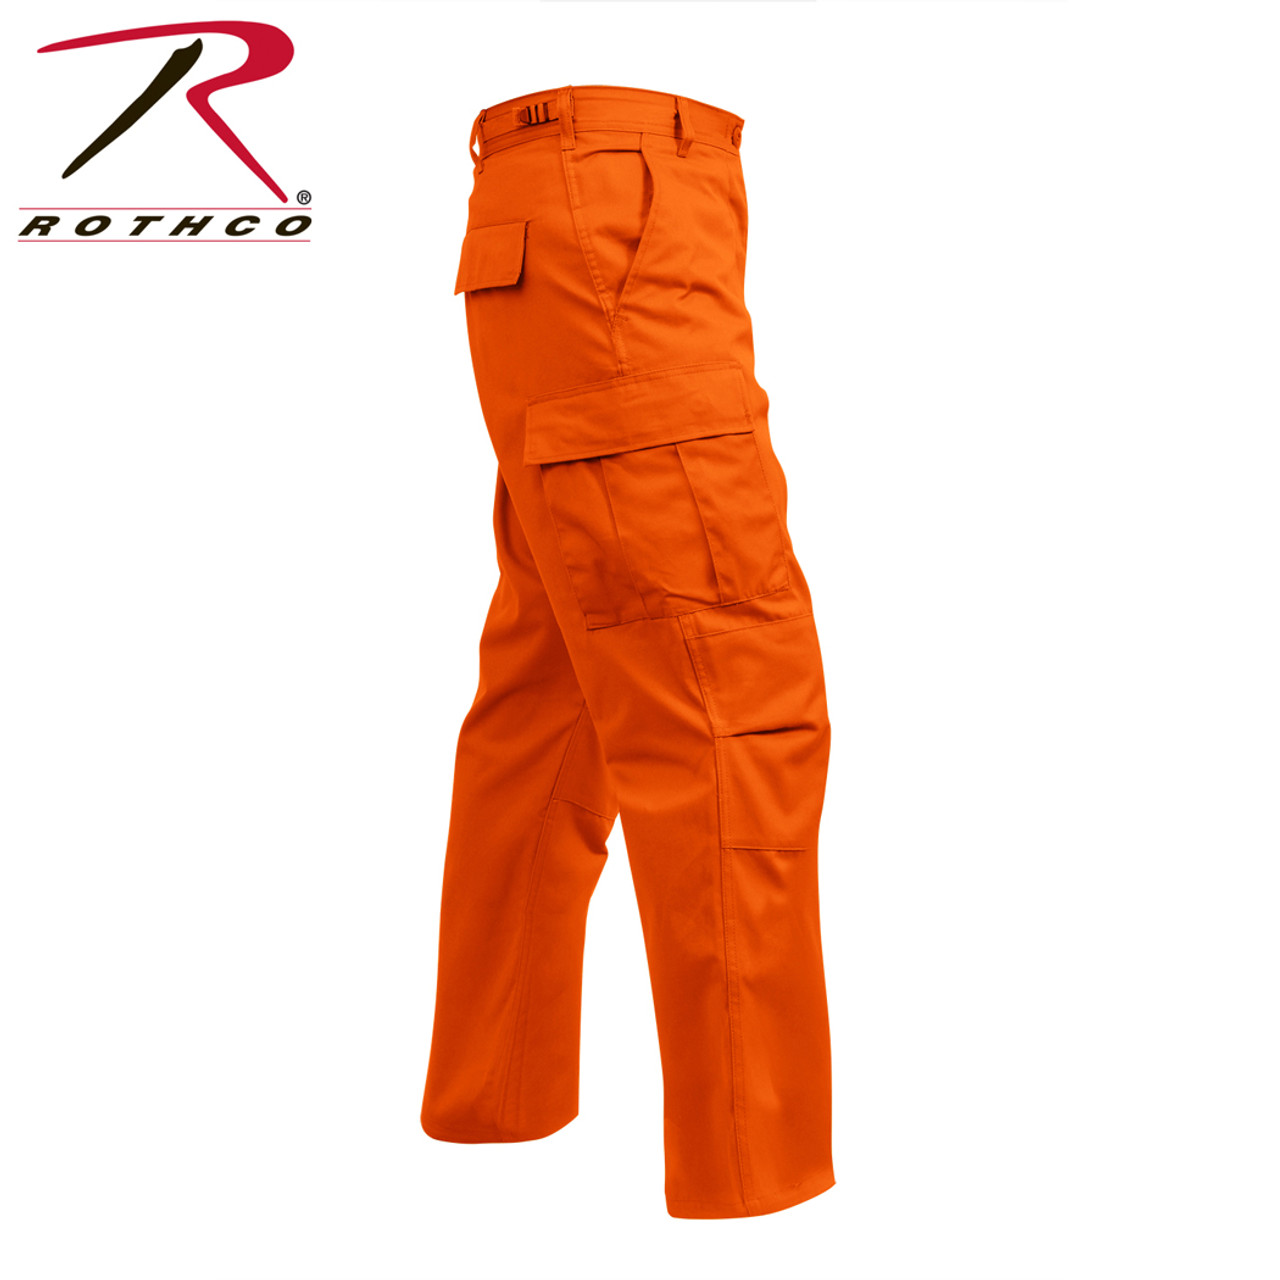 Shop Safety Orange BDU Fatigue Pants - Fatigues Army Navy Gear